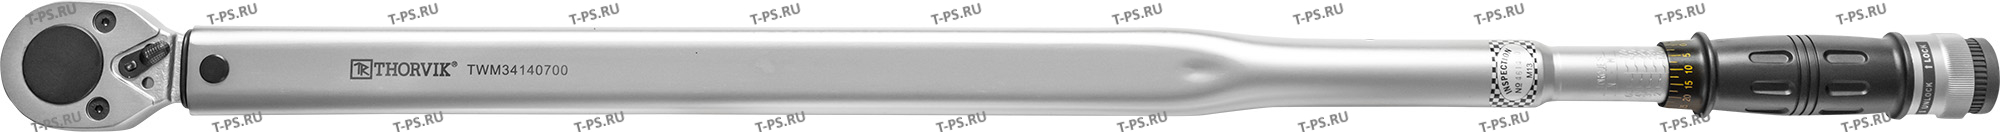 TWM34140700 Ключ динамометрический 34DR, 140-700 Нм